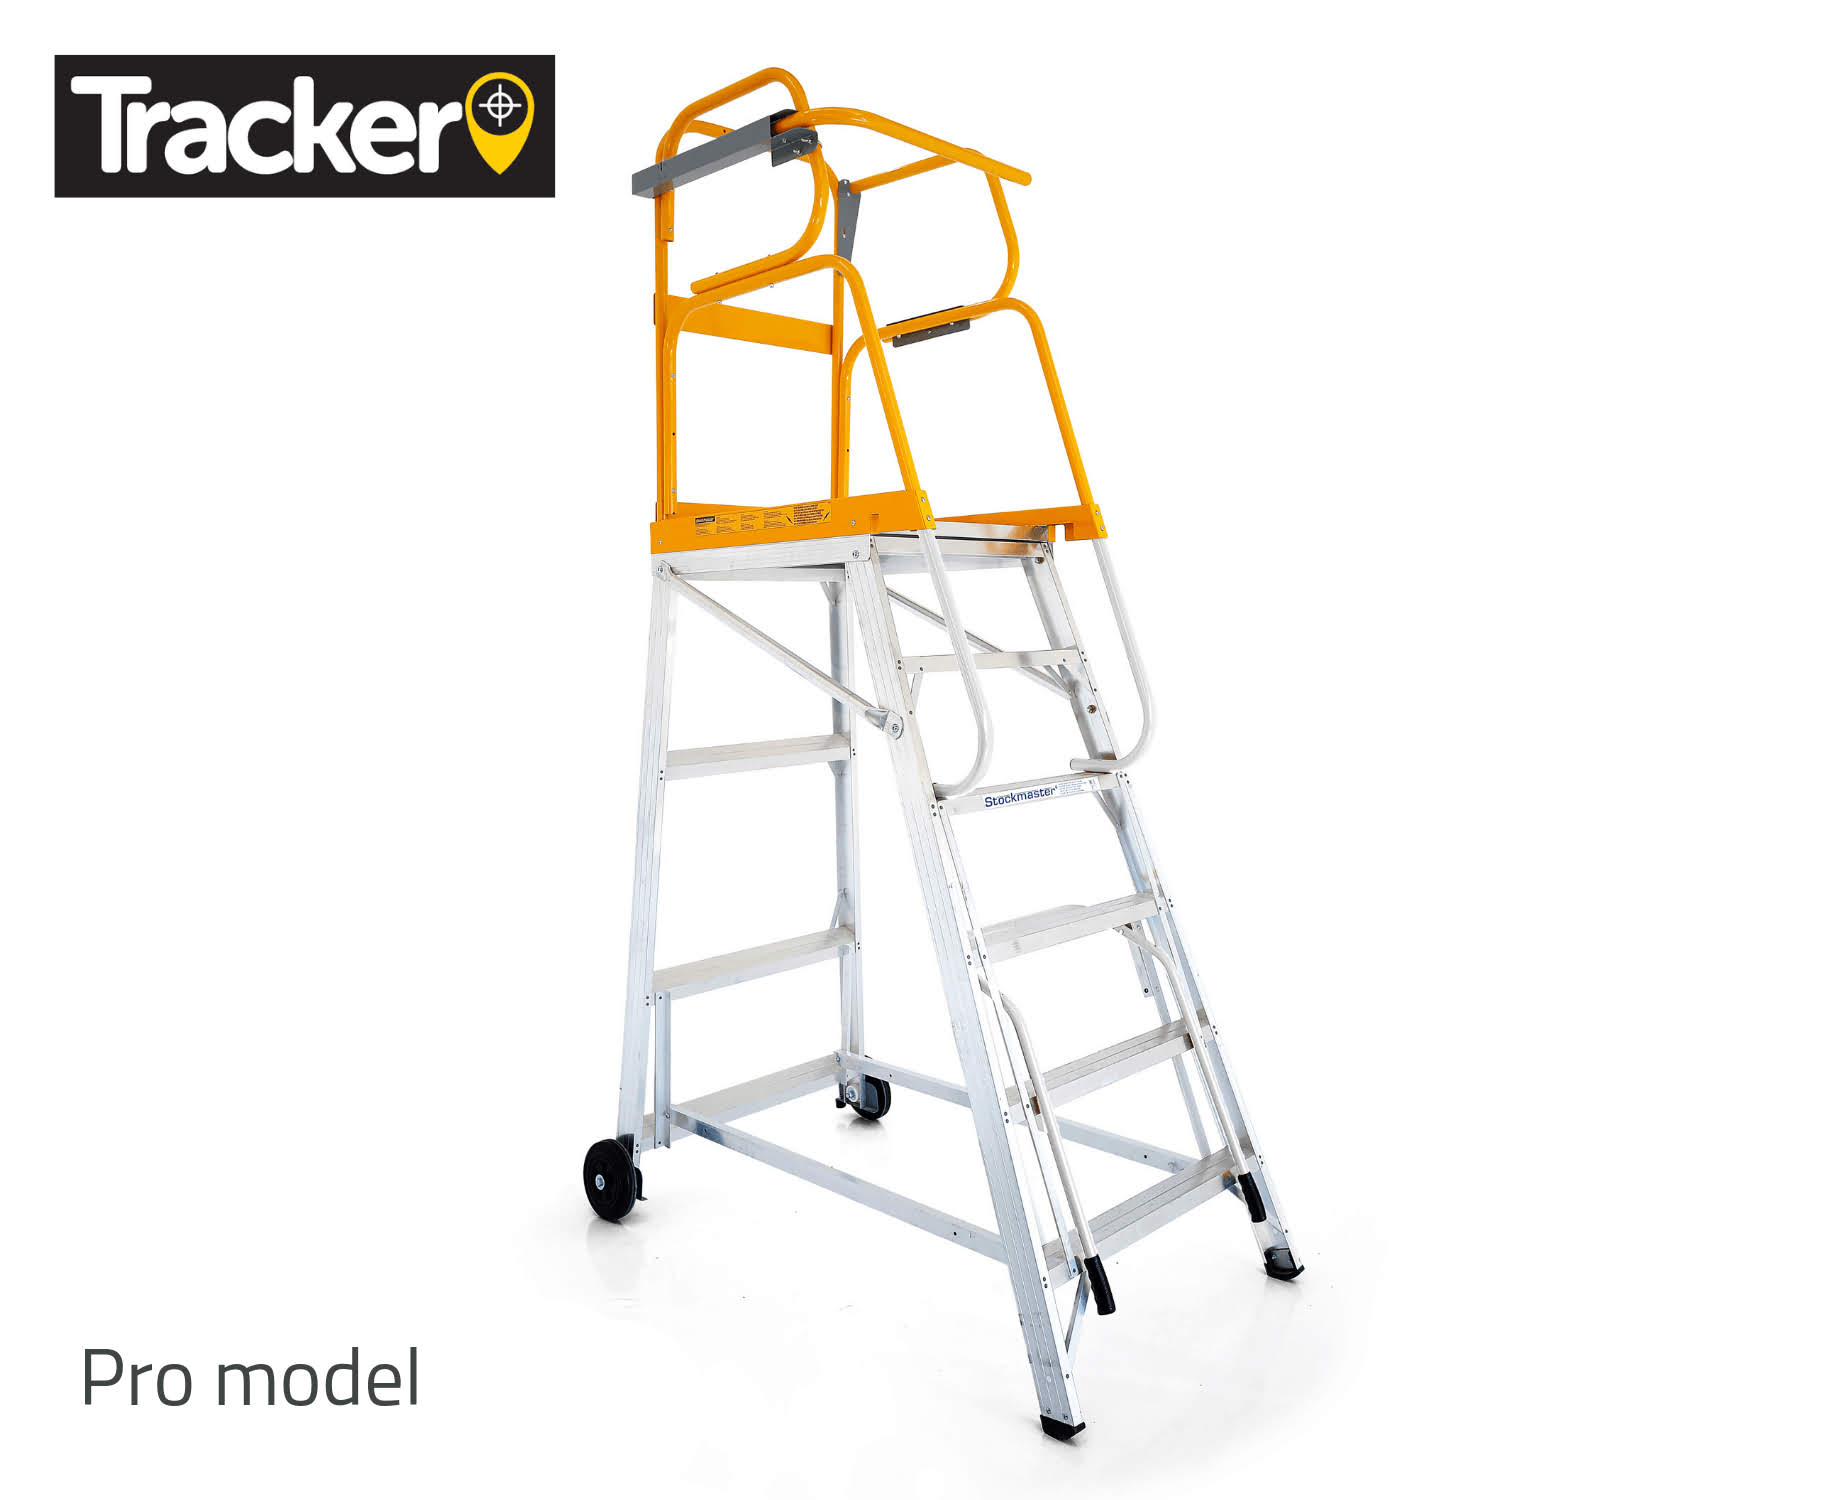 Tracker Mobile Platform Ladder